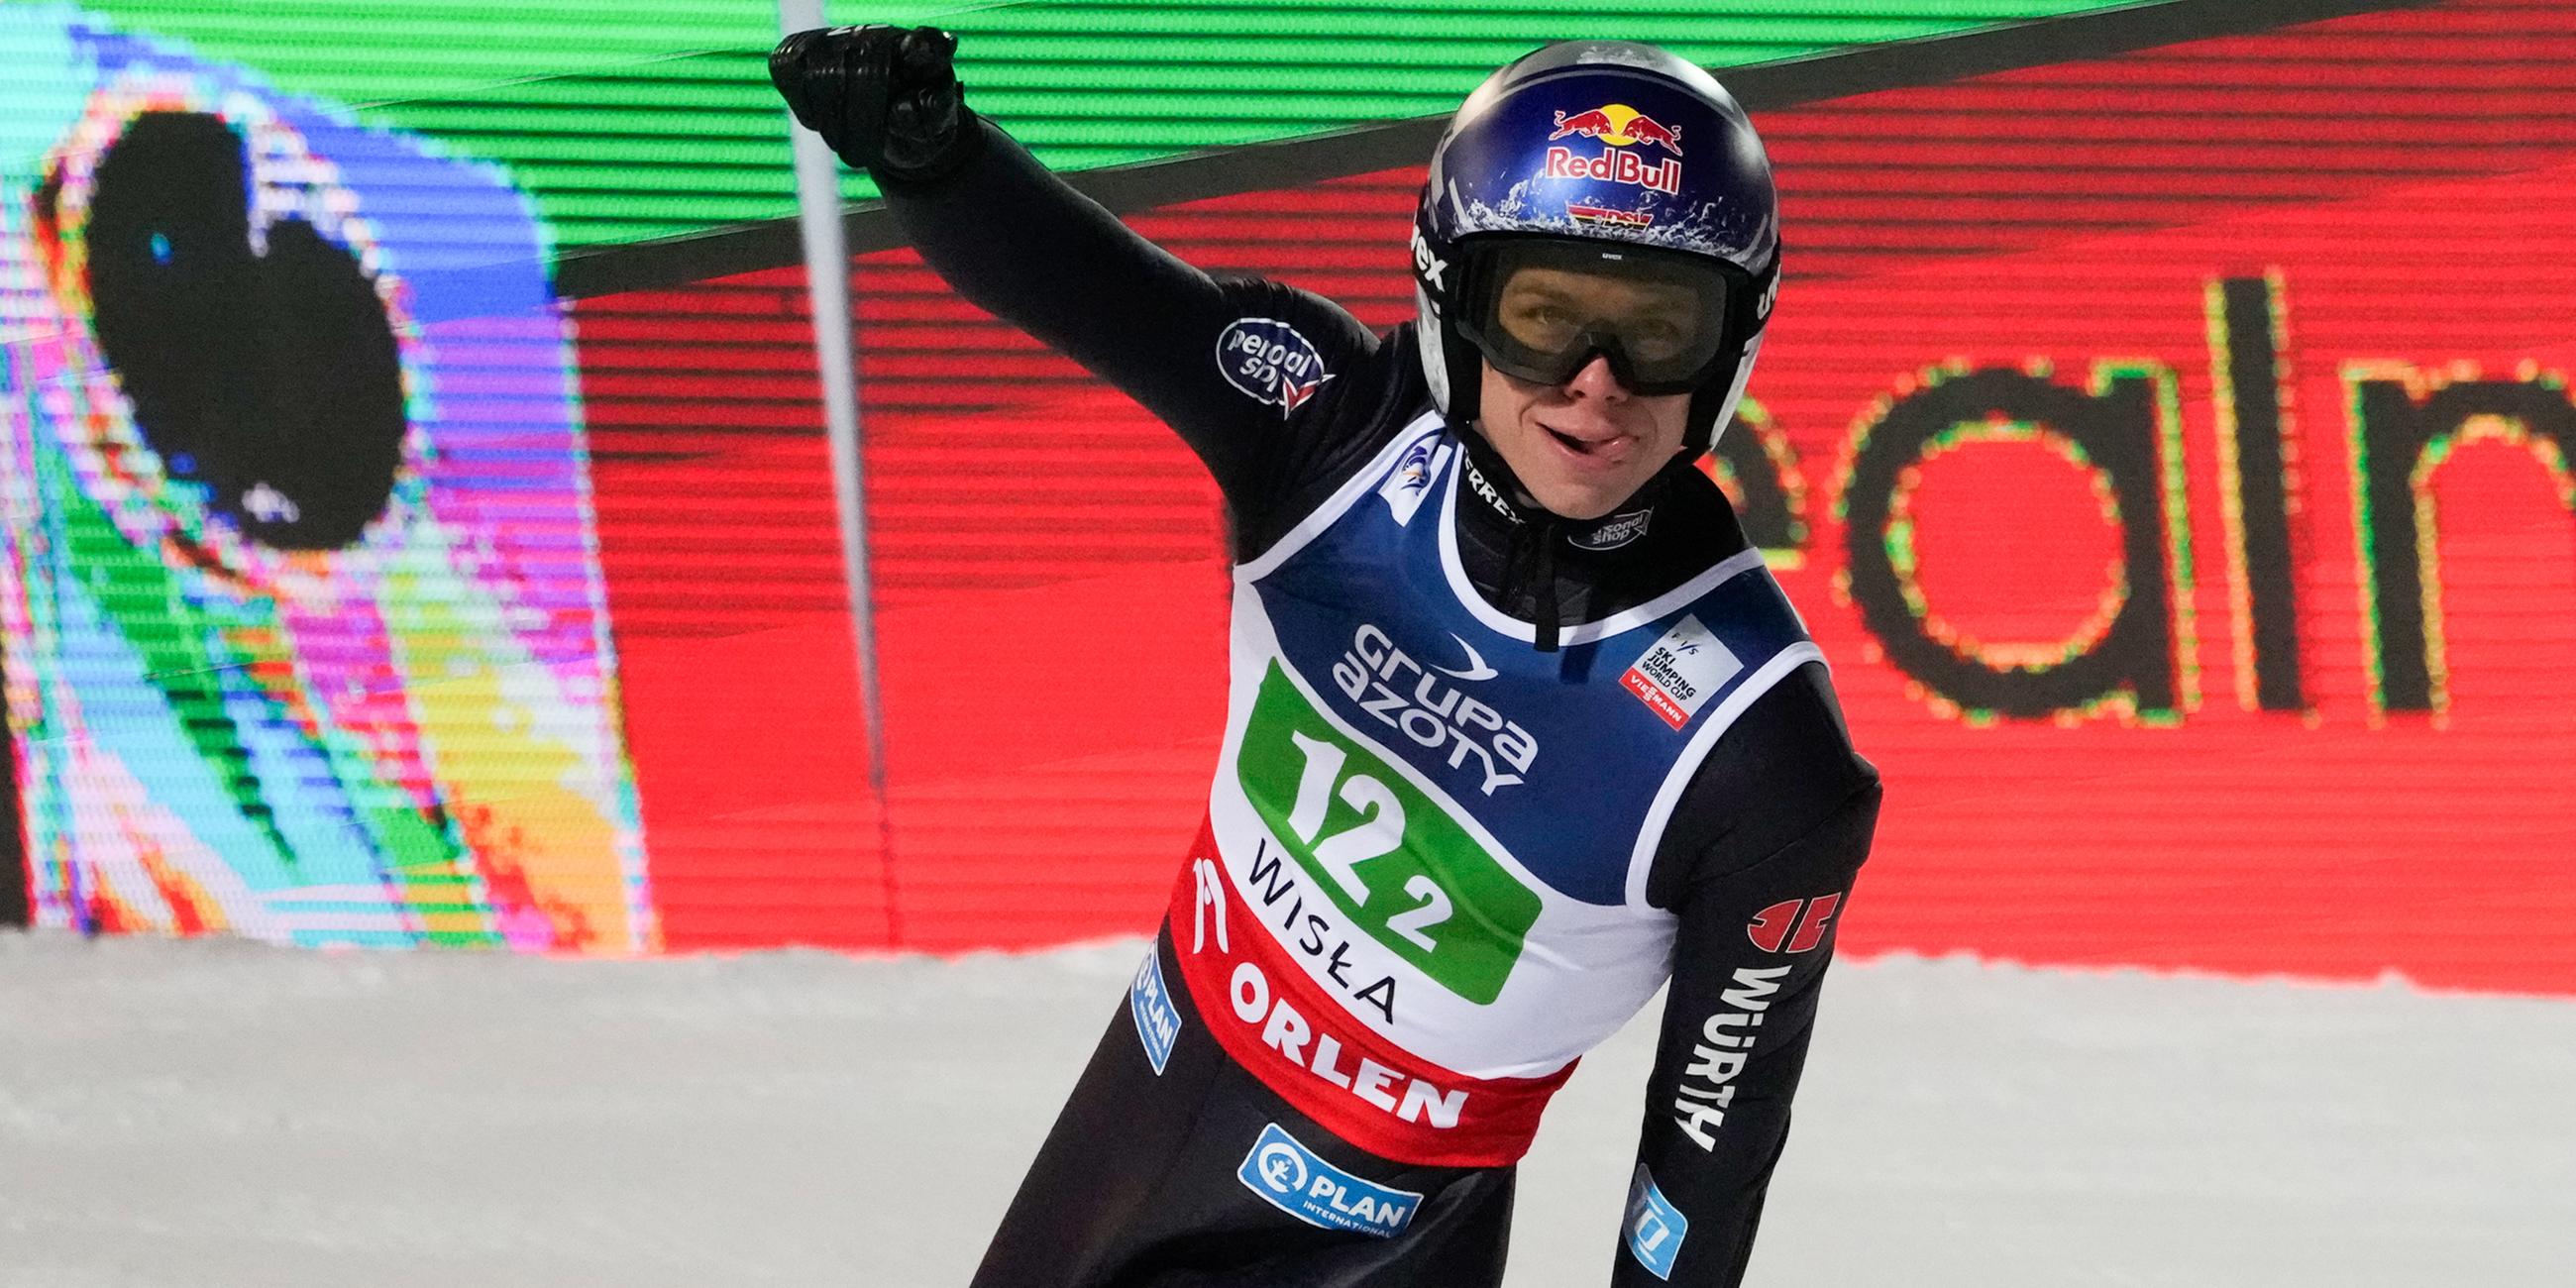 Polen, Wisla: Ski nordisch/Skispringen: Weltcup, Teamspringen, Herren: Andreas Wellinger aus Deutschland reagiert nach seinem Sprung.